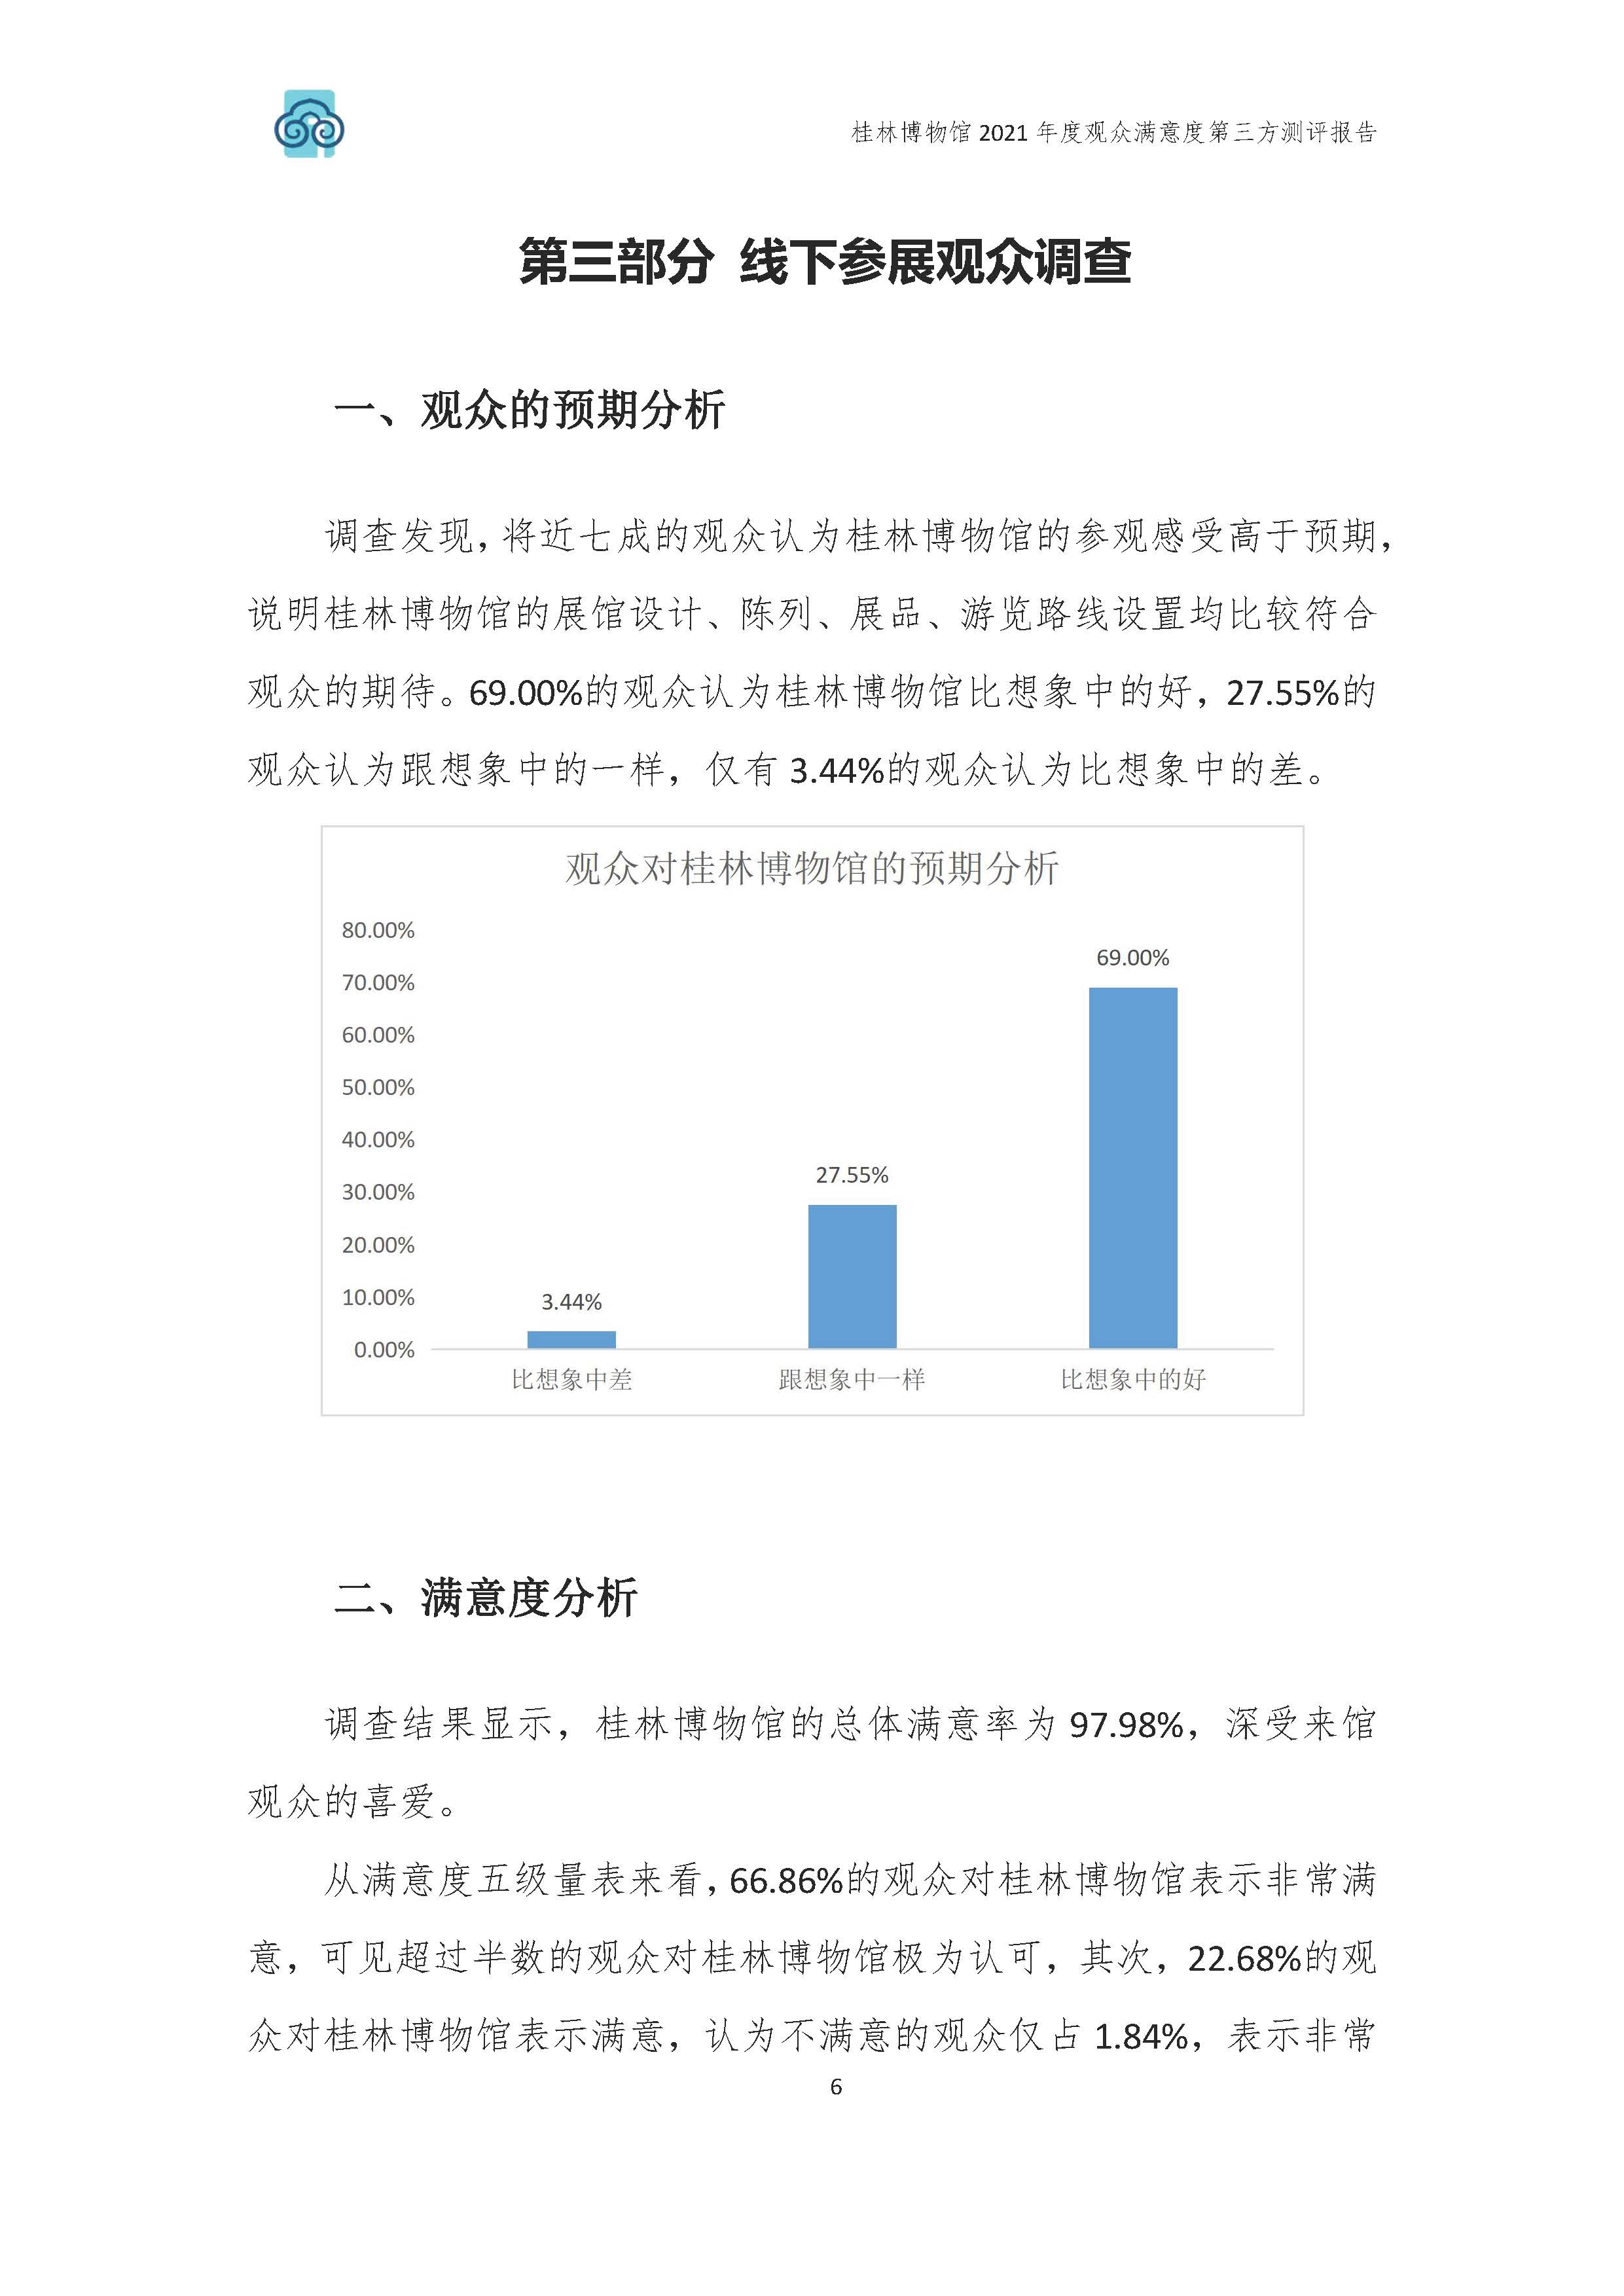 2021年桂林博物馆参观观众满意度调查报告_v3_页面_09.jpg